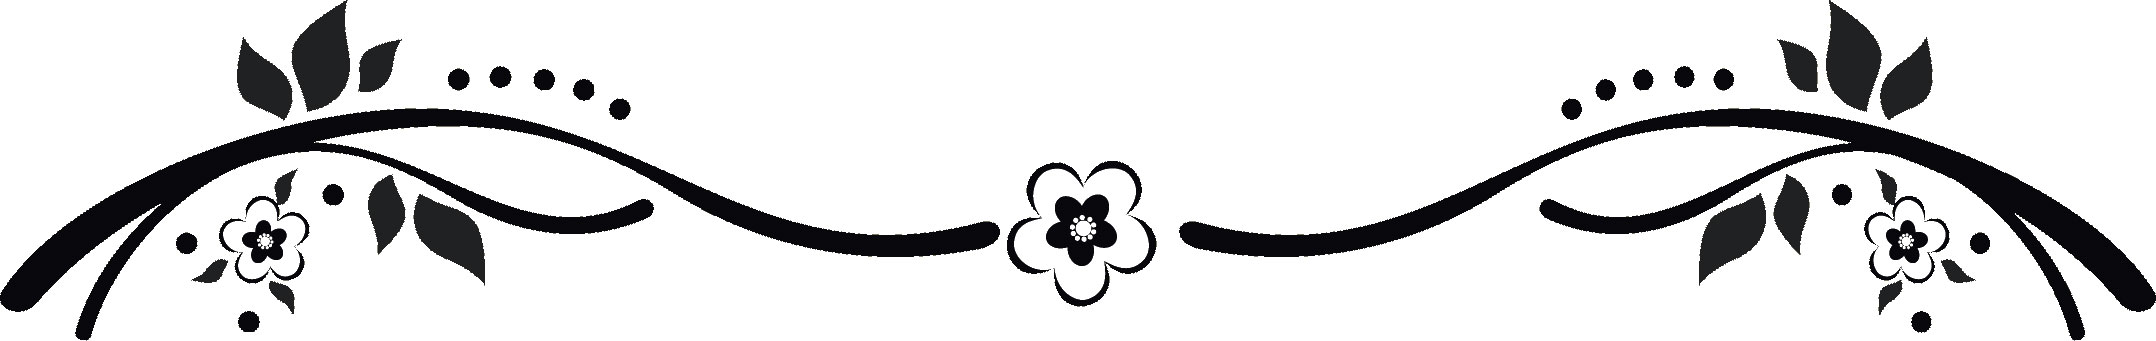 花のイラスト フリー素材 白黒 モノクロno 367 白黒 茎葉 横長